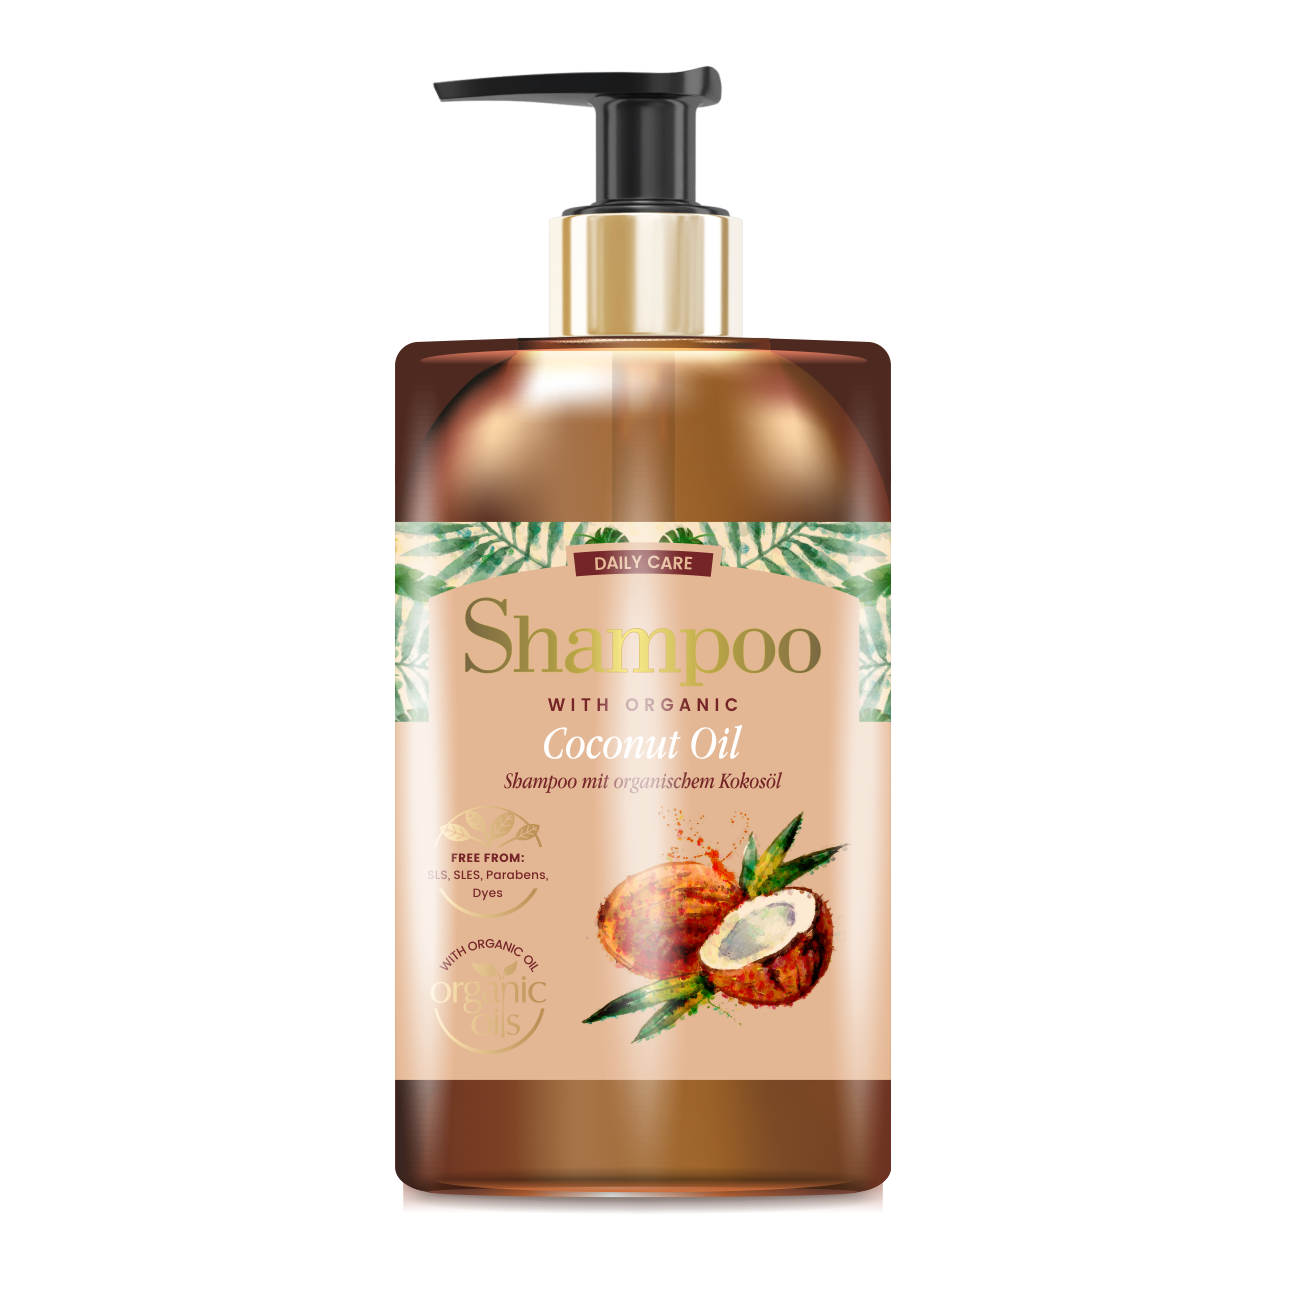 glyskincare coconut oil szampon do włosów z organicznym olejem kokosowym